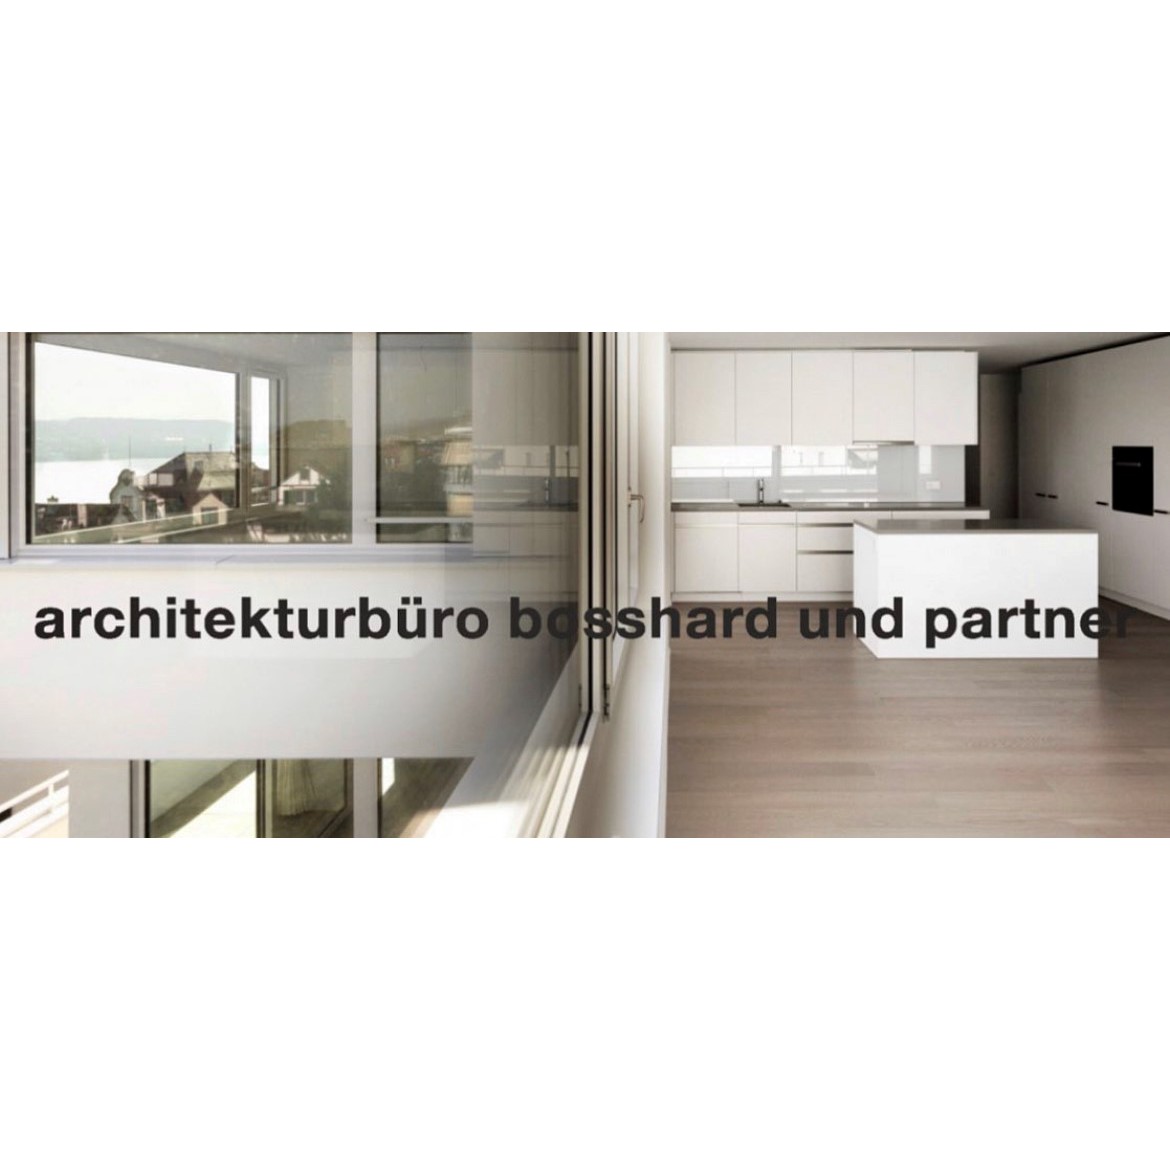 architekturbüro bosshard und partner ag Logo